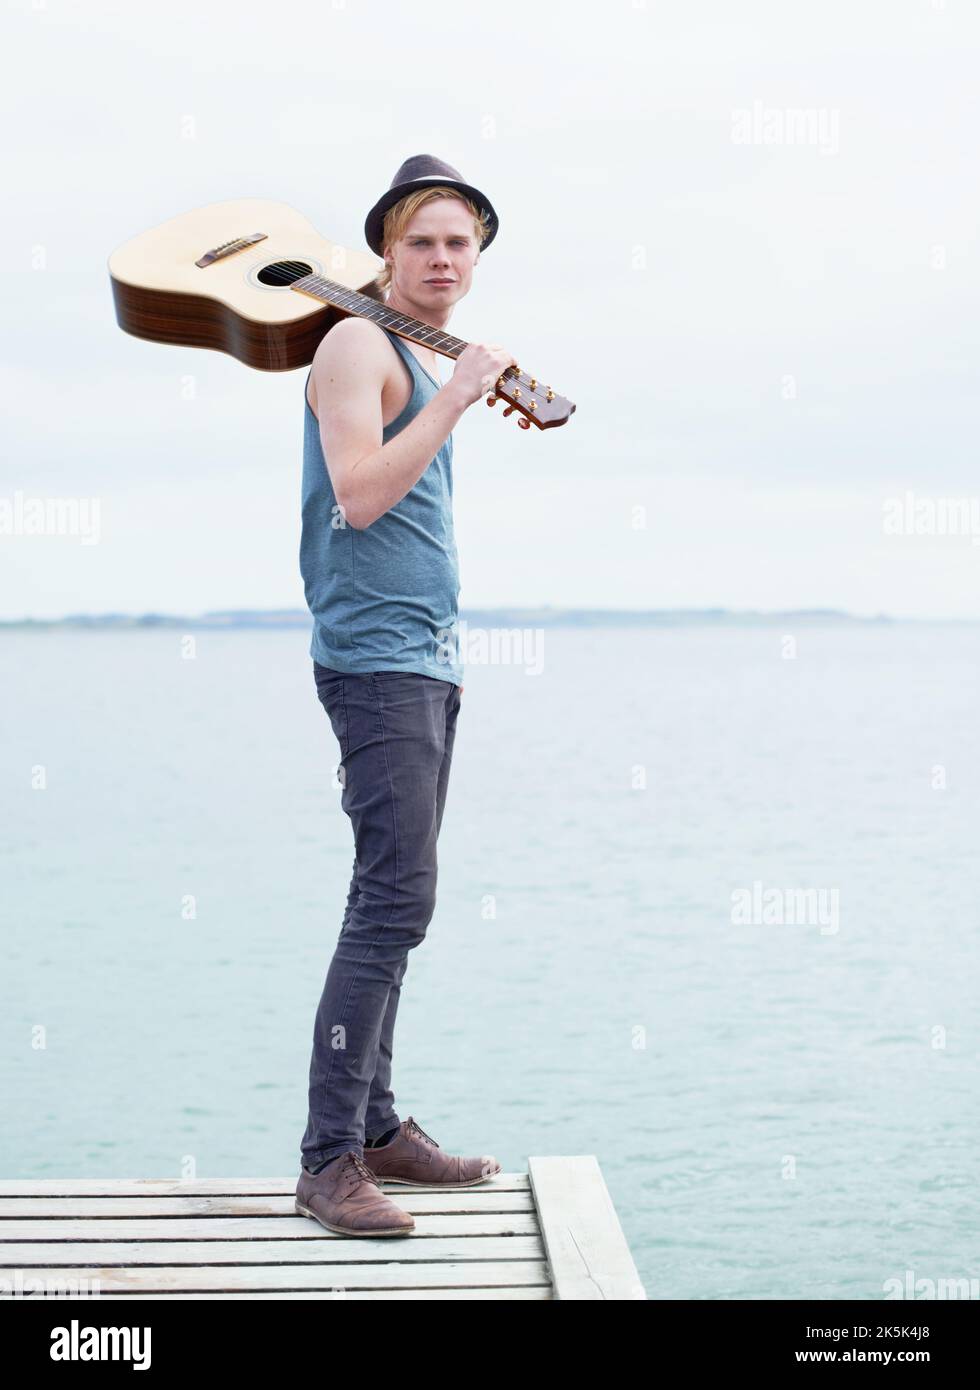 Sempre con la chitarra. Un'immagine a tutta lunghezza di un giovane elegante che porta una chitarra e si trova in piedi su un molo vicino all'acqua. Foto Stock